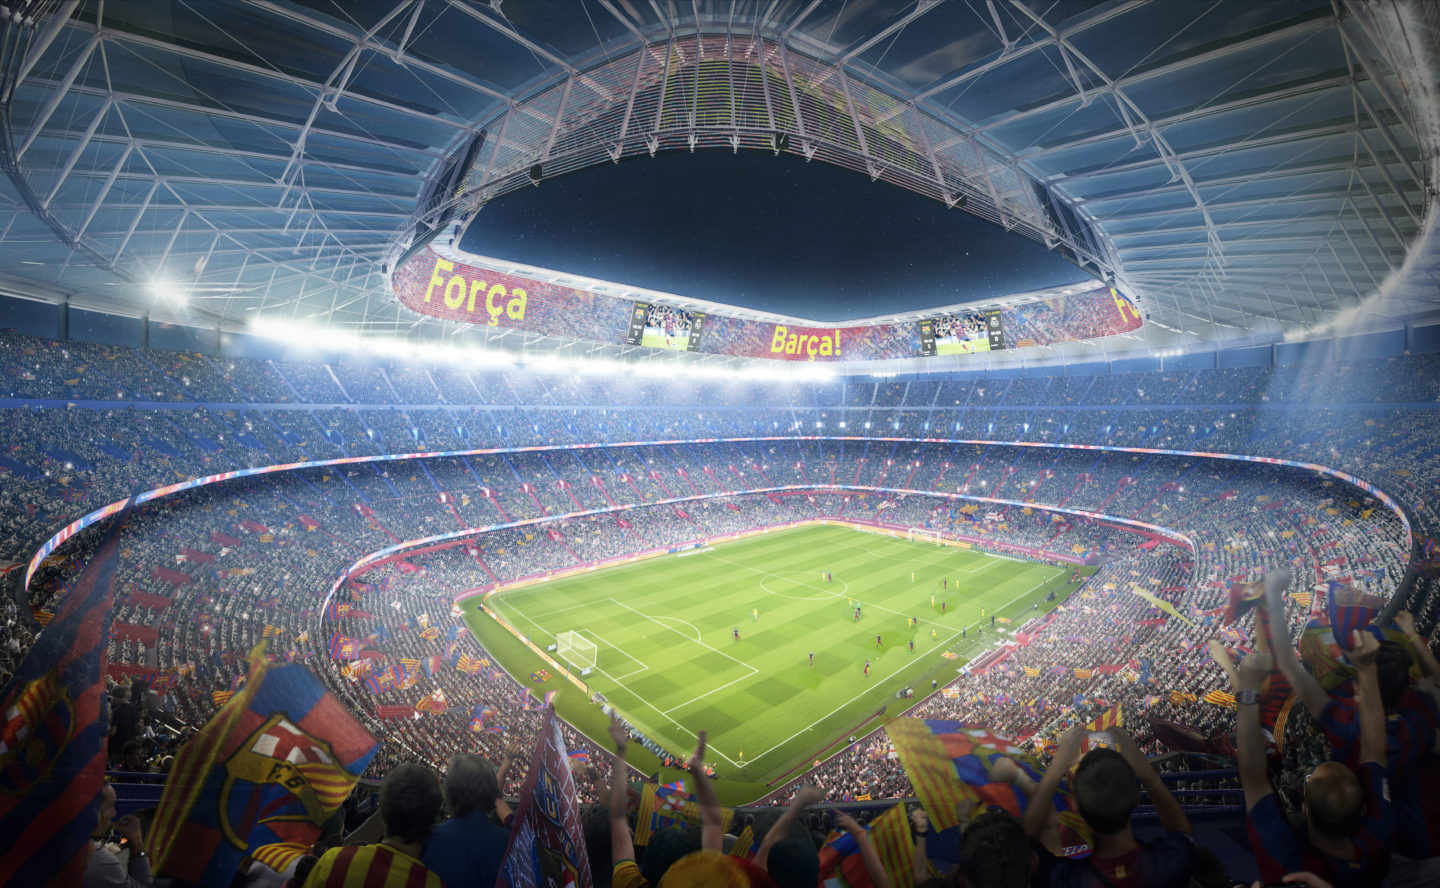 Камп нов. Стадион Камп ноу в Барселоне. Барселона стадион Camp nou. Реконструкция стадиона Камп ноу в Барселоне. Стадион Барселоны 2021.